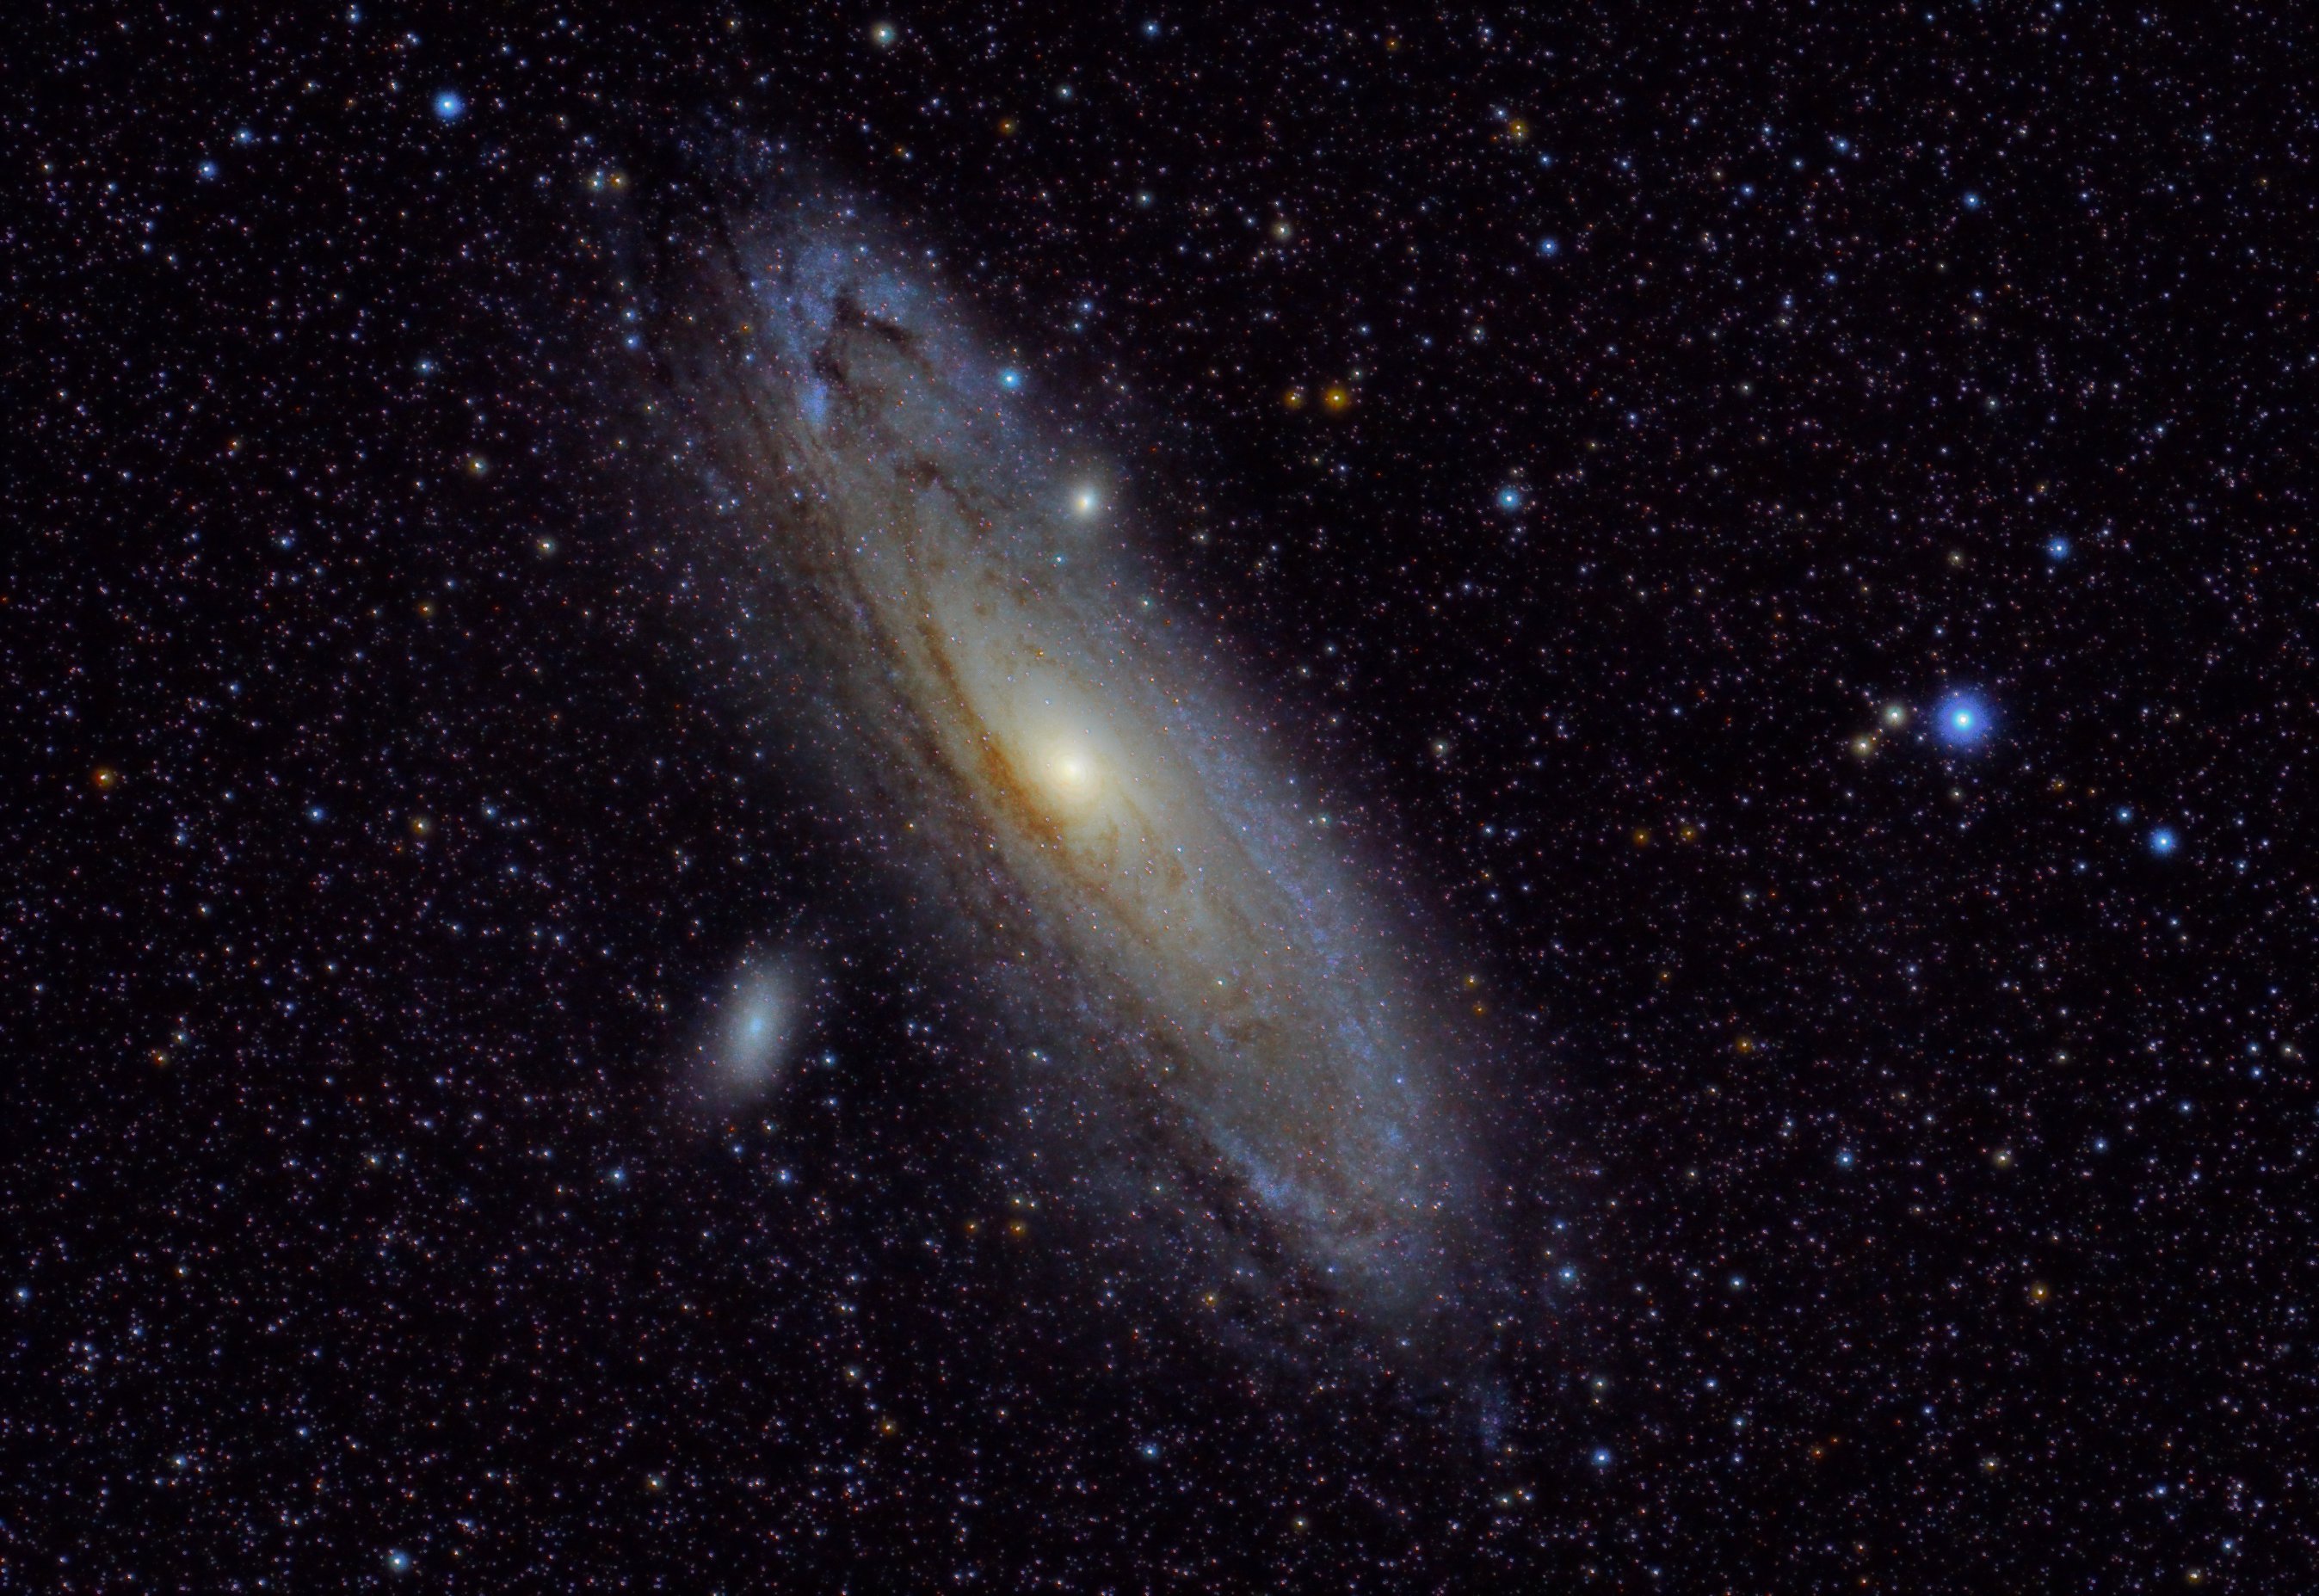 M31-Andromeda galaxy